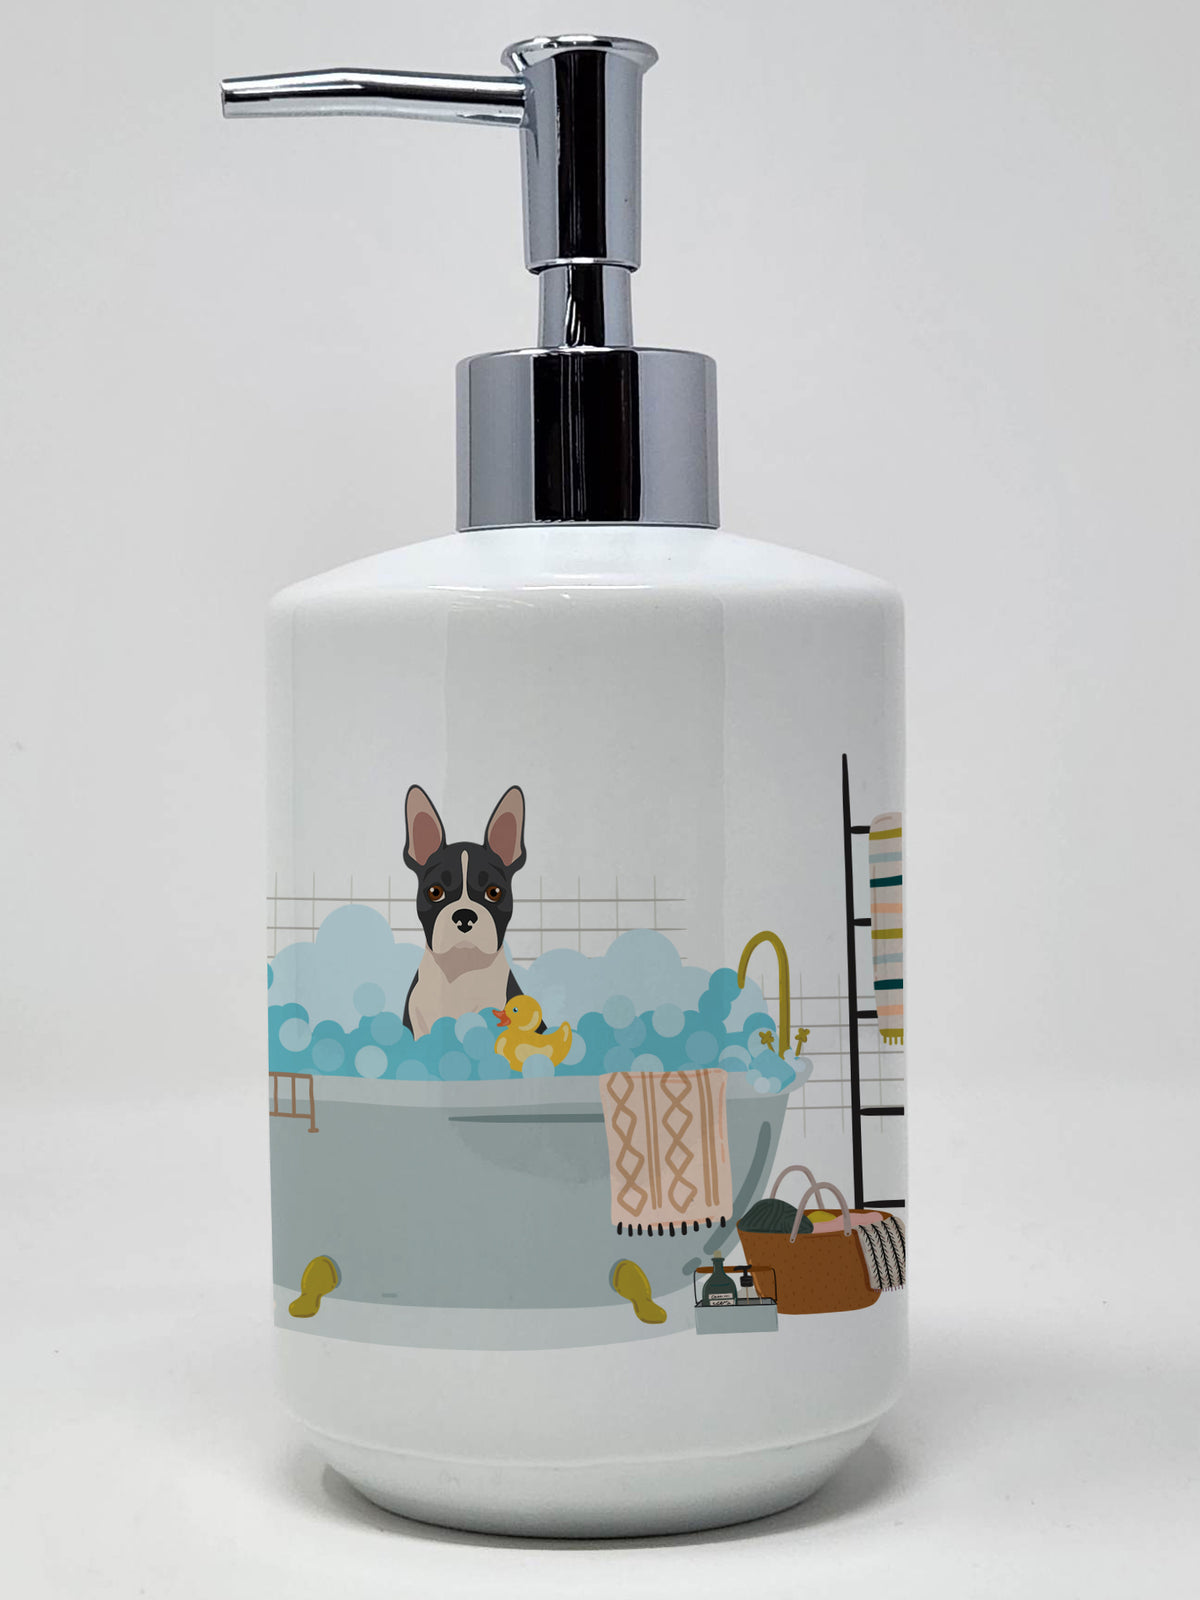 Buy this Black Boston Terrier Ceramic Soap Dispenser